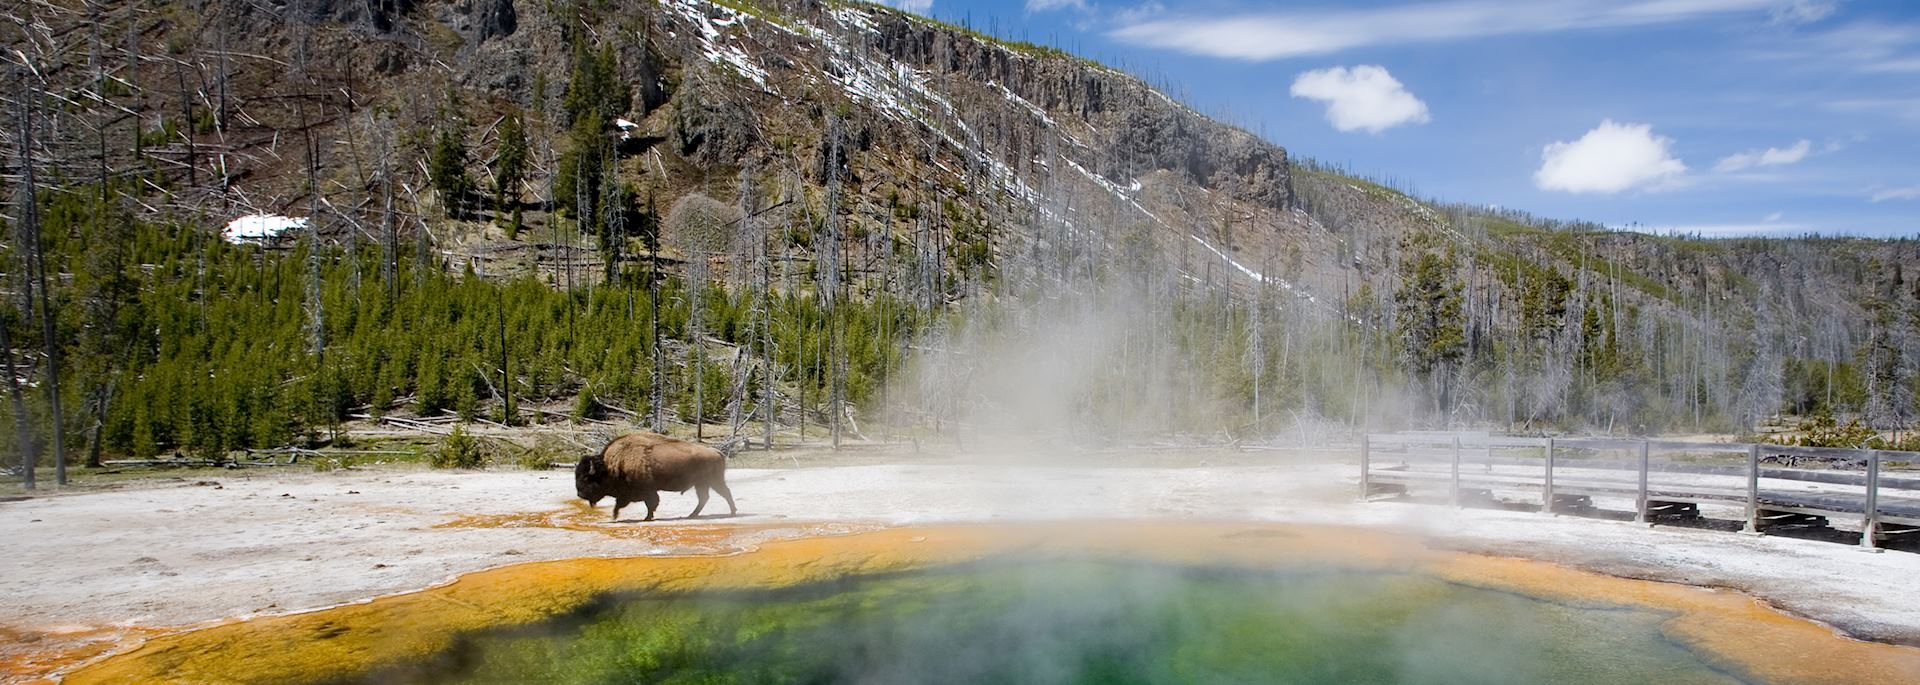 Emerald Pool, Yellowstone